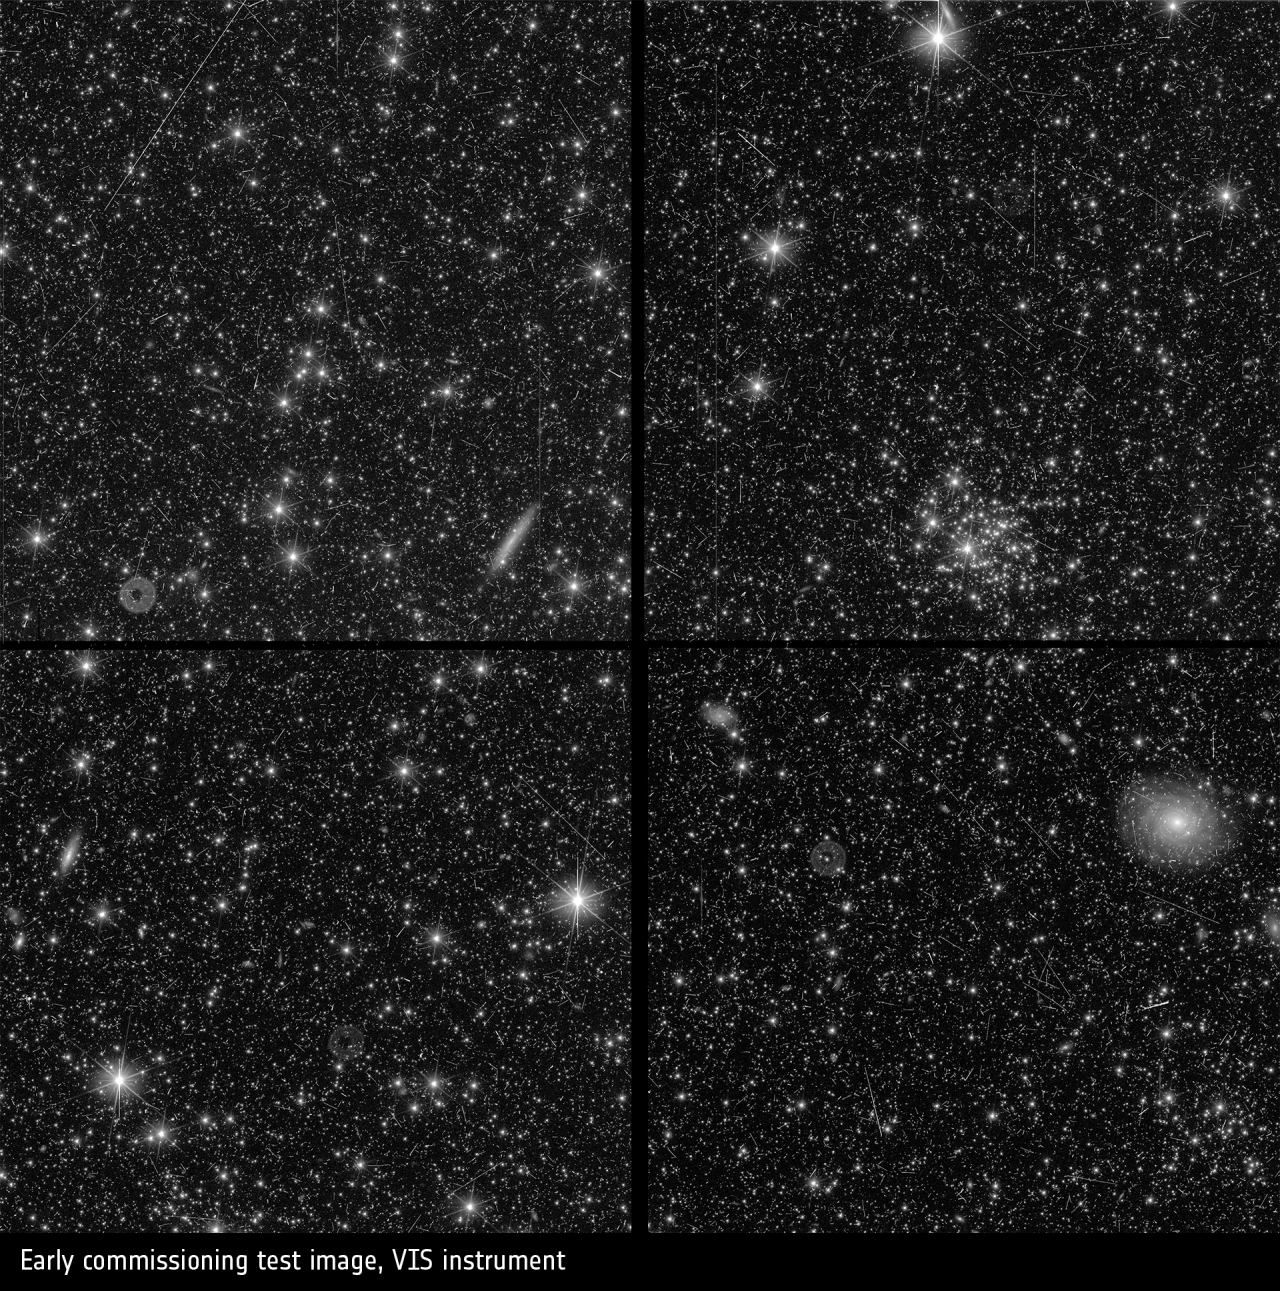 Dieses Bild wurde während der Inbetriebnahme von Euclid aufgenommen, um zu überprüfen, ob Euclids VISible-Instrument (VIS) wie erwartet funktioniert. Du siehst hier spiralförmige und elliptische Galaxien, nahe und ferne Sterne, Sternhaufen und vieles mehr. Die abgebildete Himmelsfläche beträgt tatsächlich nur etwa ein Viertel der Breite und Höhe des Vollmonds.